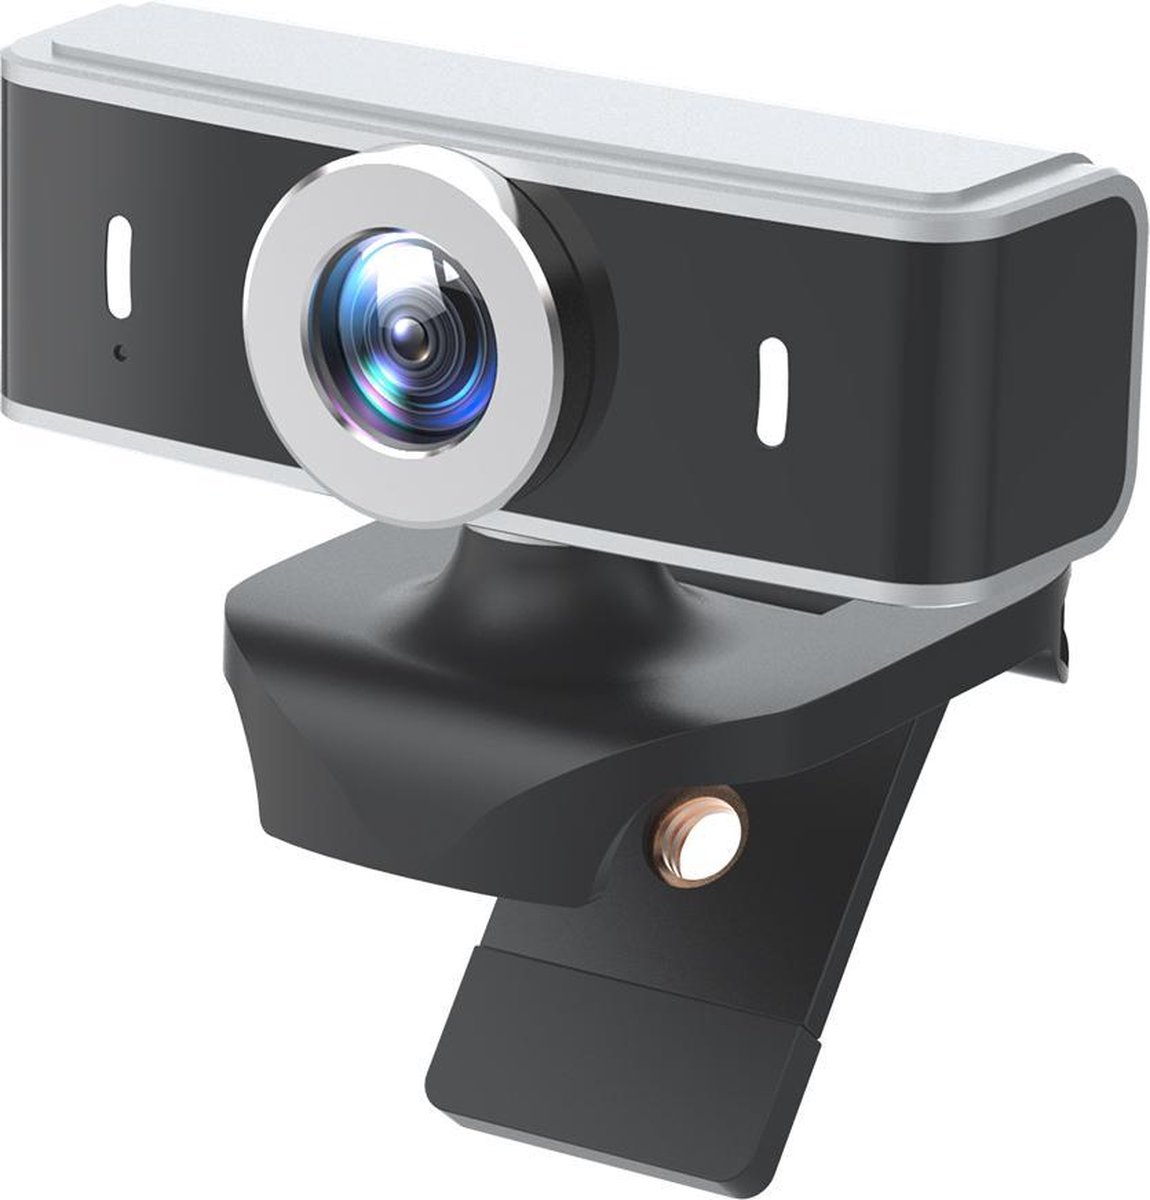 FullHD Webcam met Microfoon. USB PC Camera. Plug & Play. Fixed Focus - 1080P. Windows en MacOS. 25-30fps. Compact. Haarscherp en vloeiend beeld. Weinig licht nodig. Contact met Familie en vergaderen via Skype, Zoom, Teams, Facetime, Youtube etc.